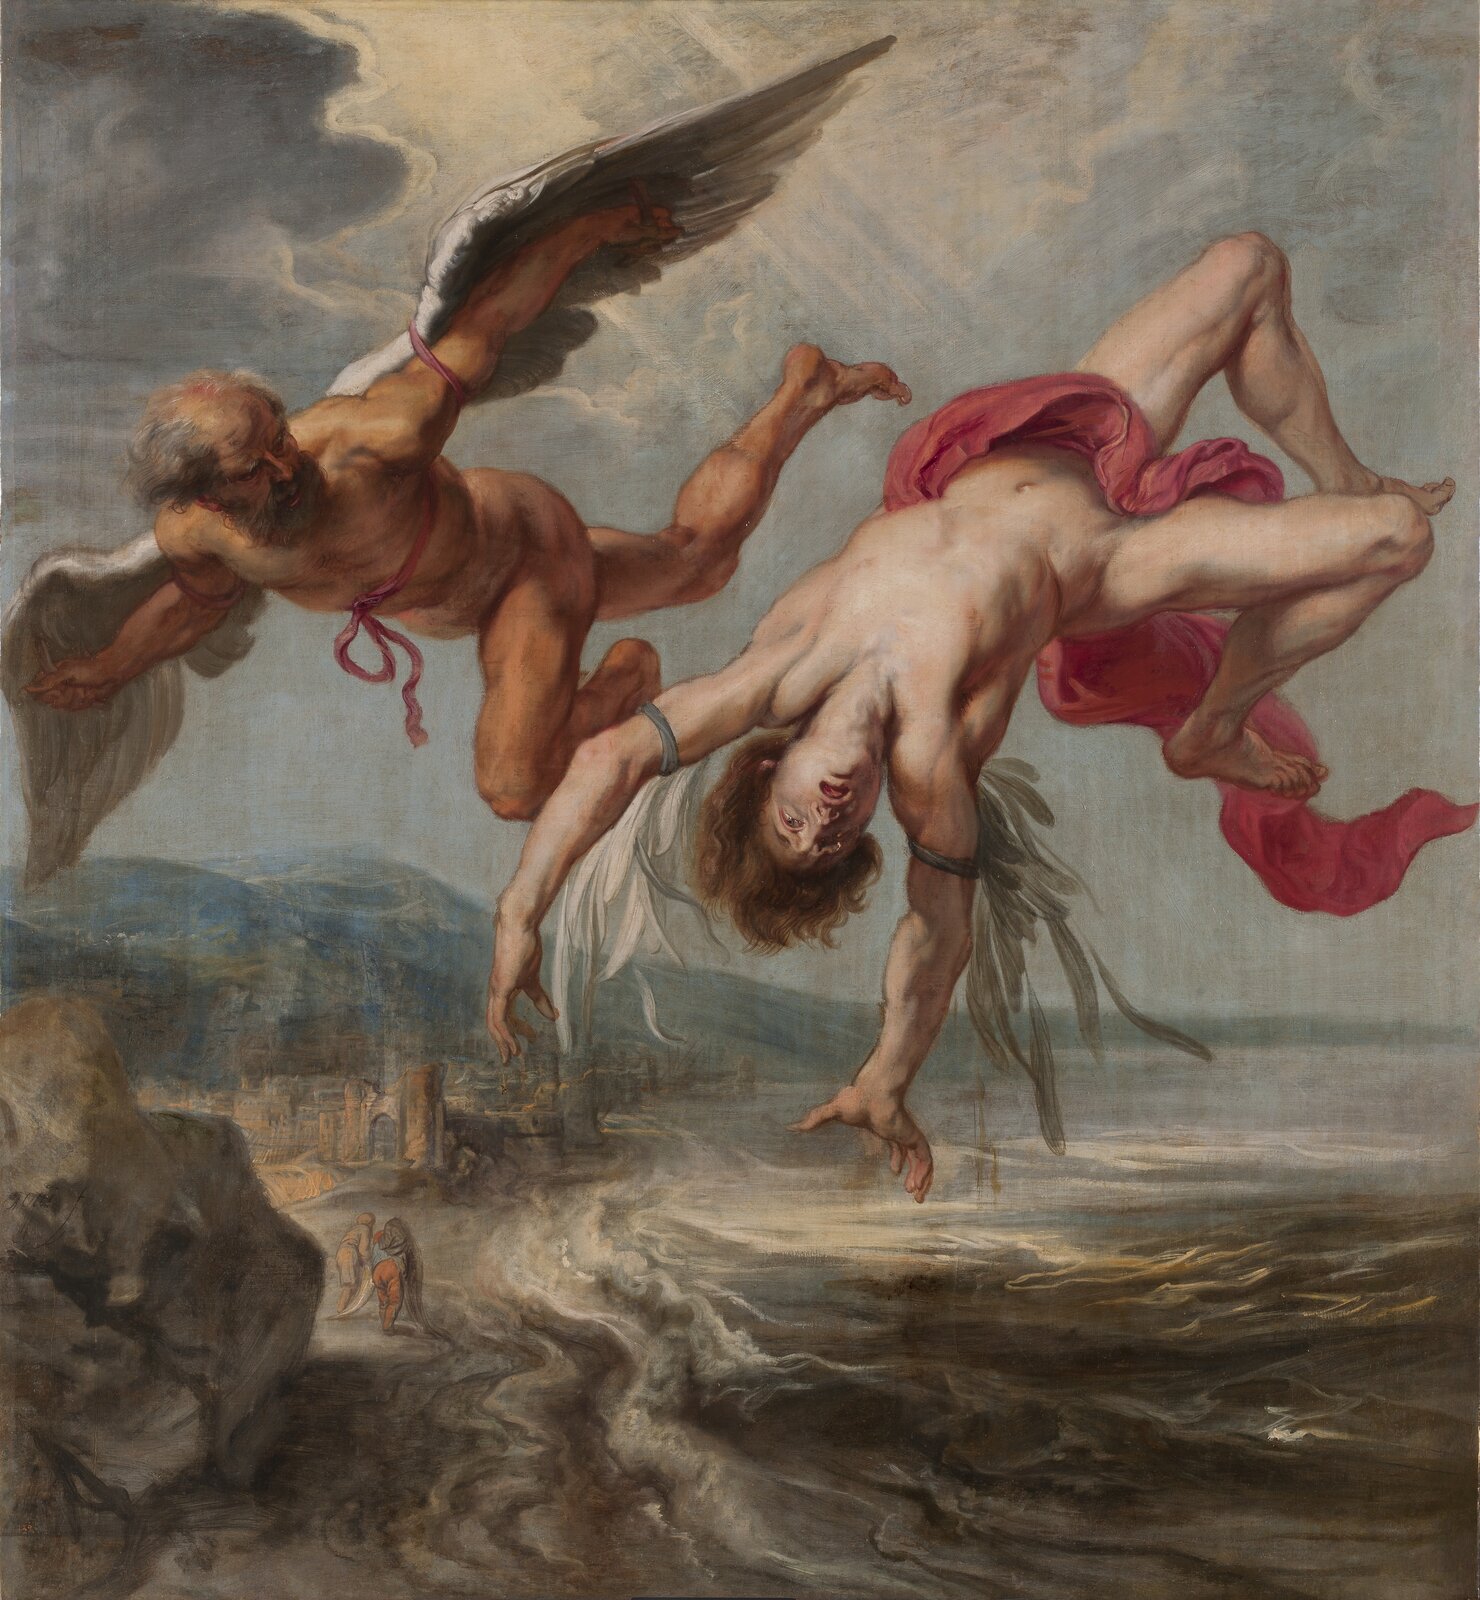 Ilustracja przedstawia obraz Petera Paula Rubensa "Upadek Ikara". Ukazuje dwie postacie w powietrzu na tle niskiego pejzażu. Po lewej stronie znajduje się Dedal z rozpostartymi ramionami, na których założone ma skrzydła. Jego lewa noga jest podkurczona, prawa lekko ugięta. Brodaty mężczyzna spogląda na spadającego Ikara. Ciało młodzieńca jest bezwładne, fragmenty jego skrzydeł są zwiotczałe. Na twarzy rysuje się przerażenie z powodu upadku. Pejzaż w dole ukazuje skaliste wybrzeże z zabudowaniami. Po brzegu przechadza się para ludzi. Ciemne morze zapowiada tragedię. Przez chmury na niebie przedostają się promienie słońca.